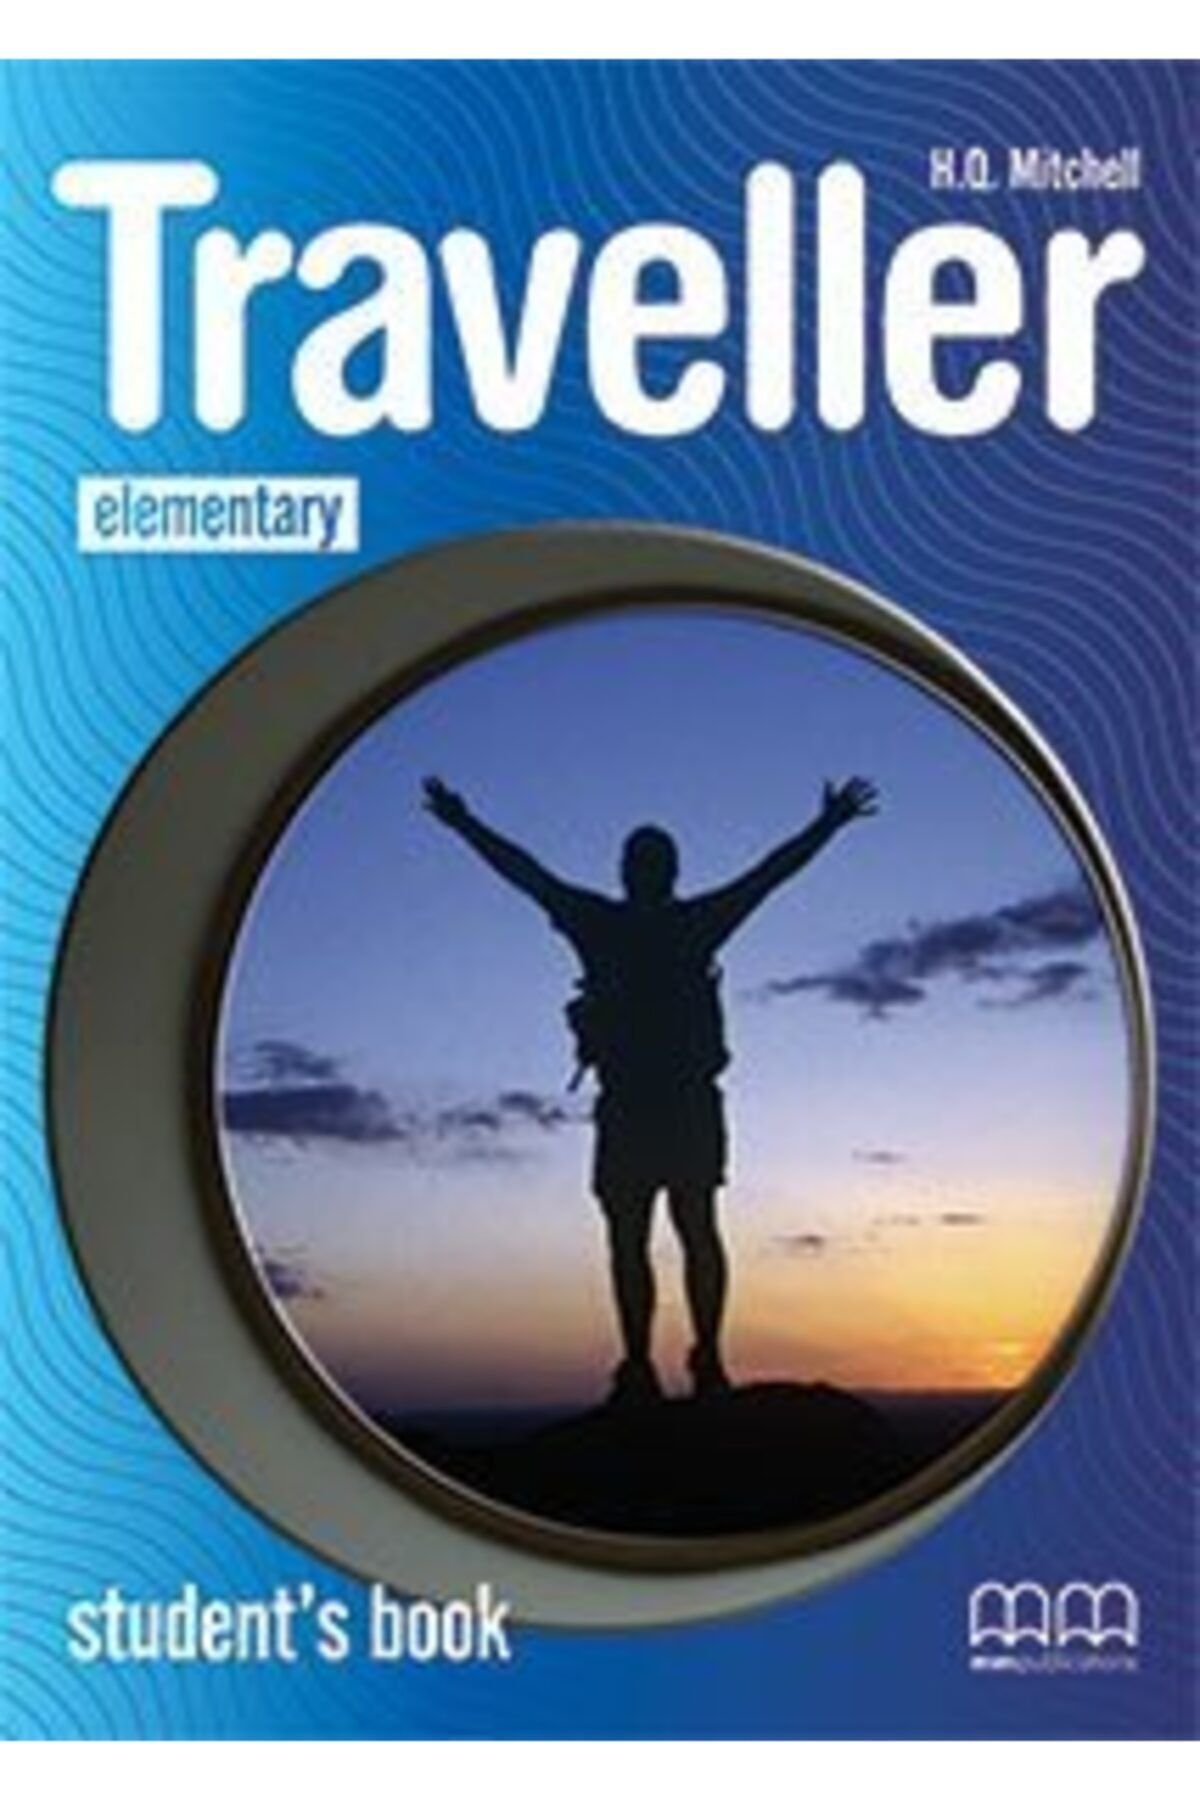 Elementary students book учебник. Traveller учебник. Traveller pre-Intermediate. Travel English учебник. Student's book книга.